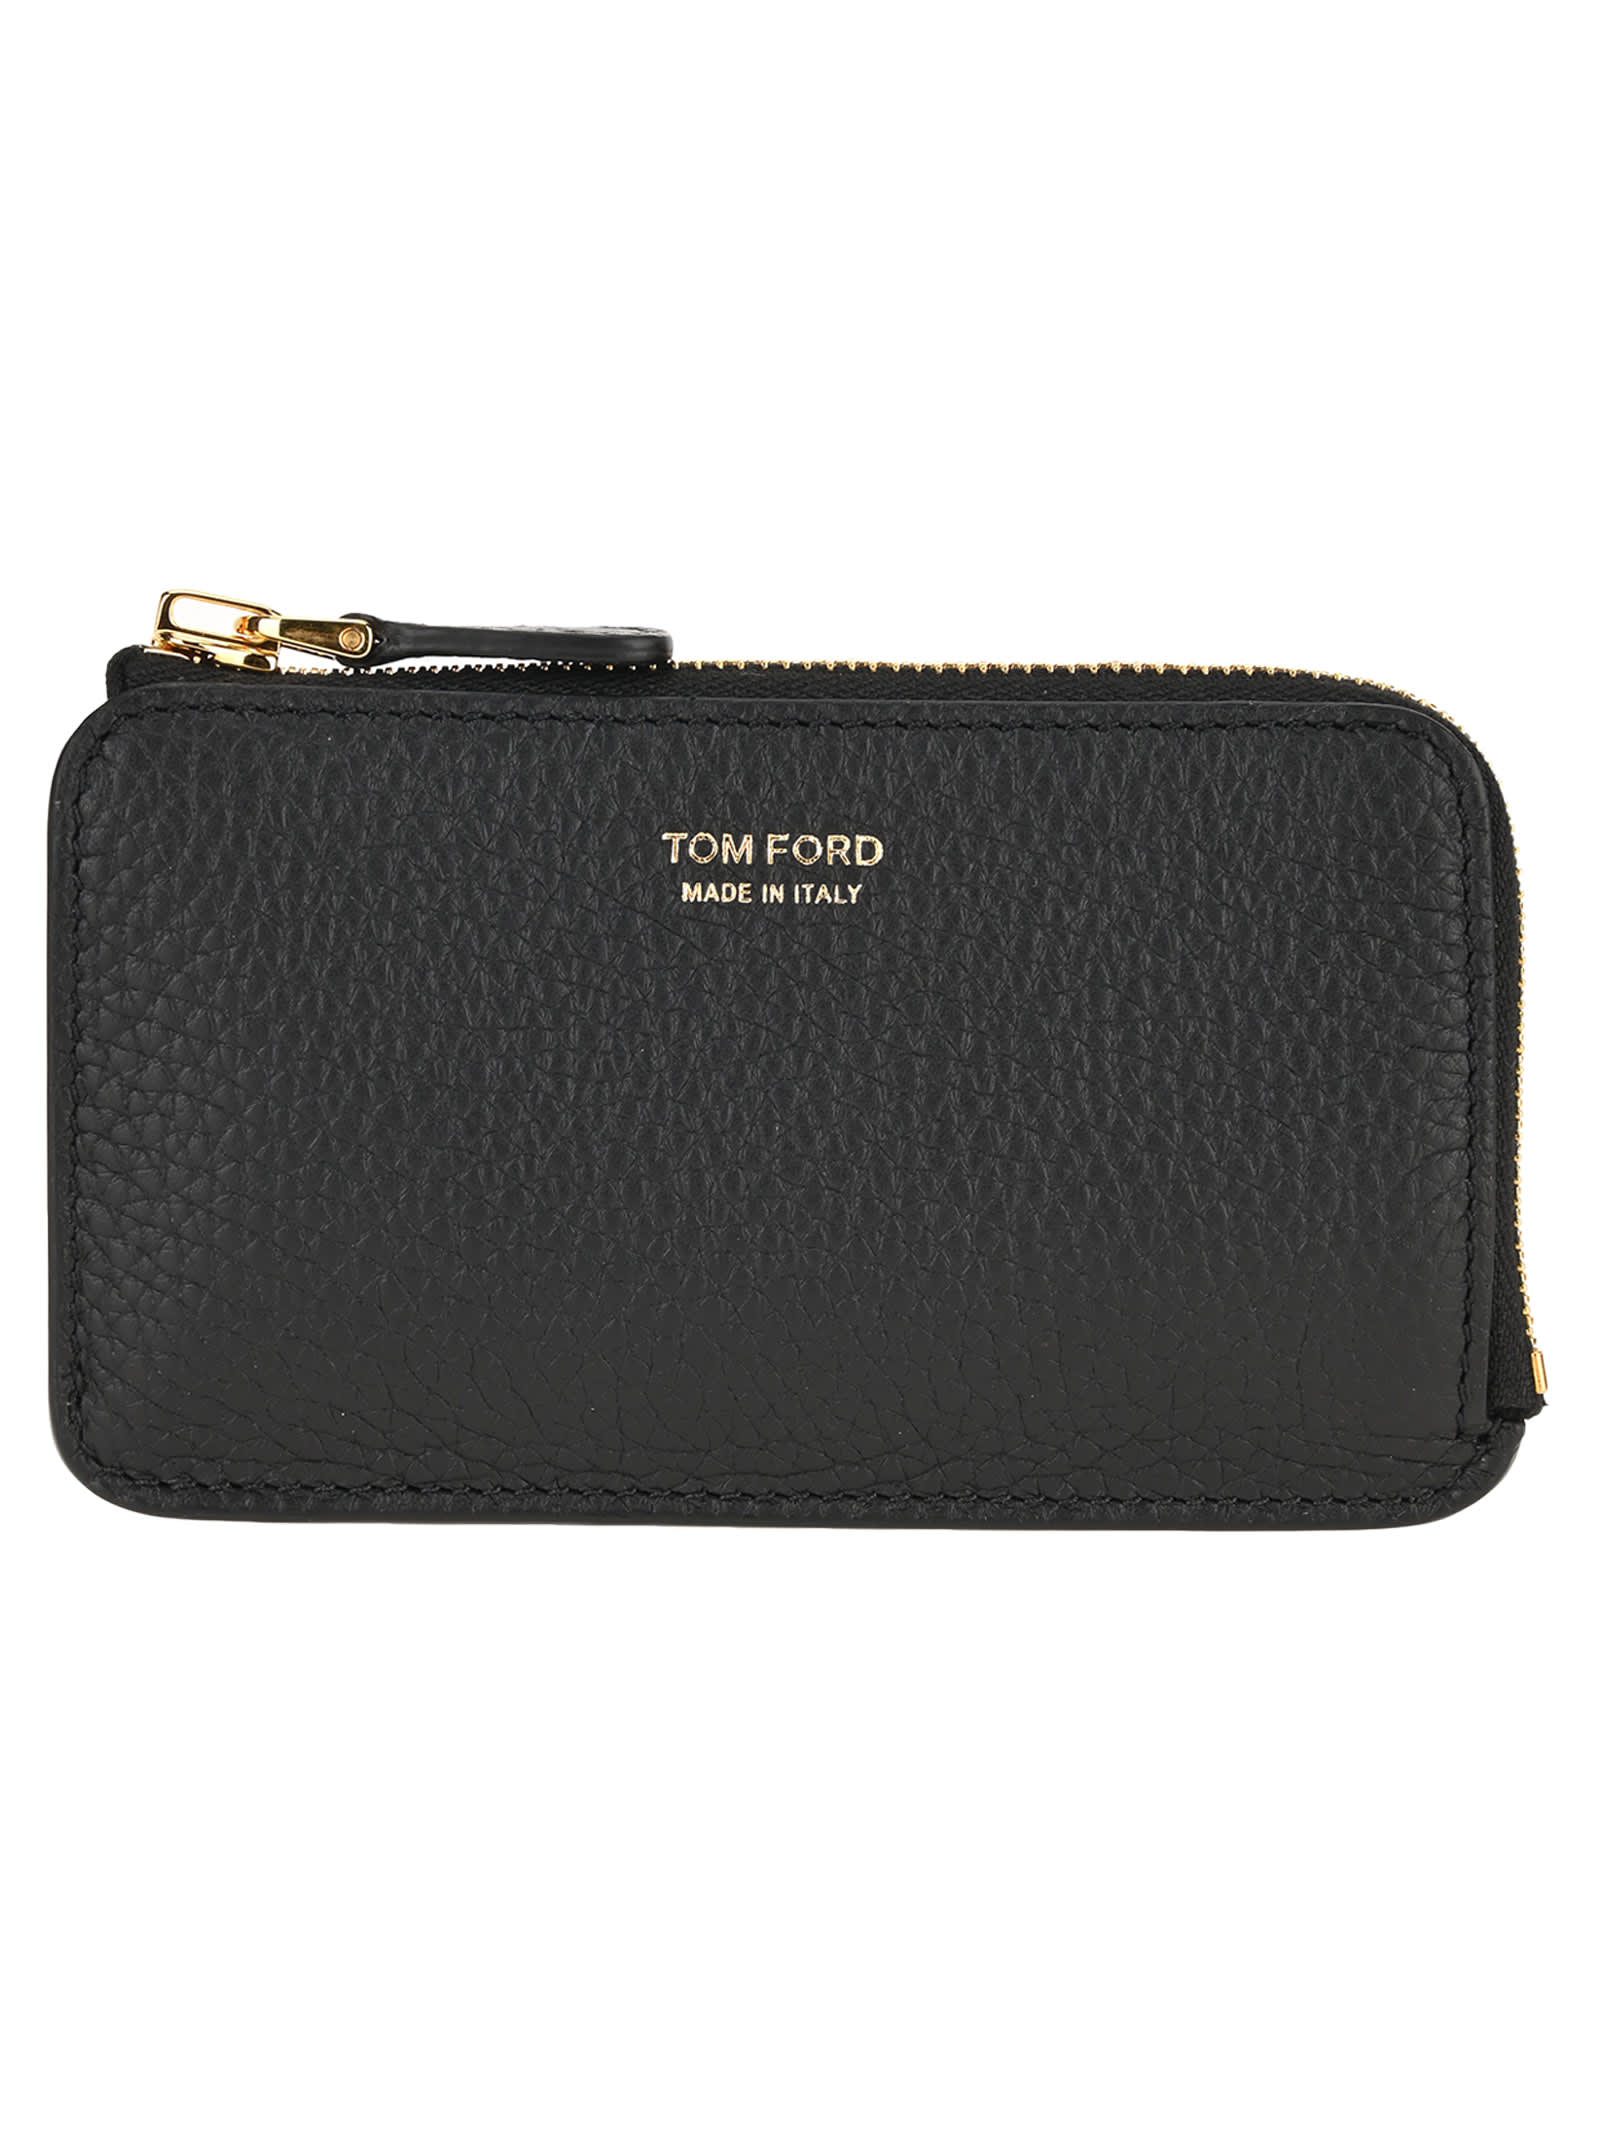 Tom Ford Zip Wallet In Black